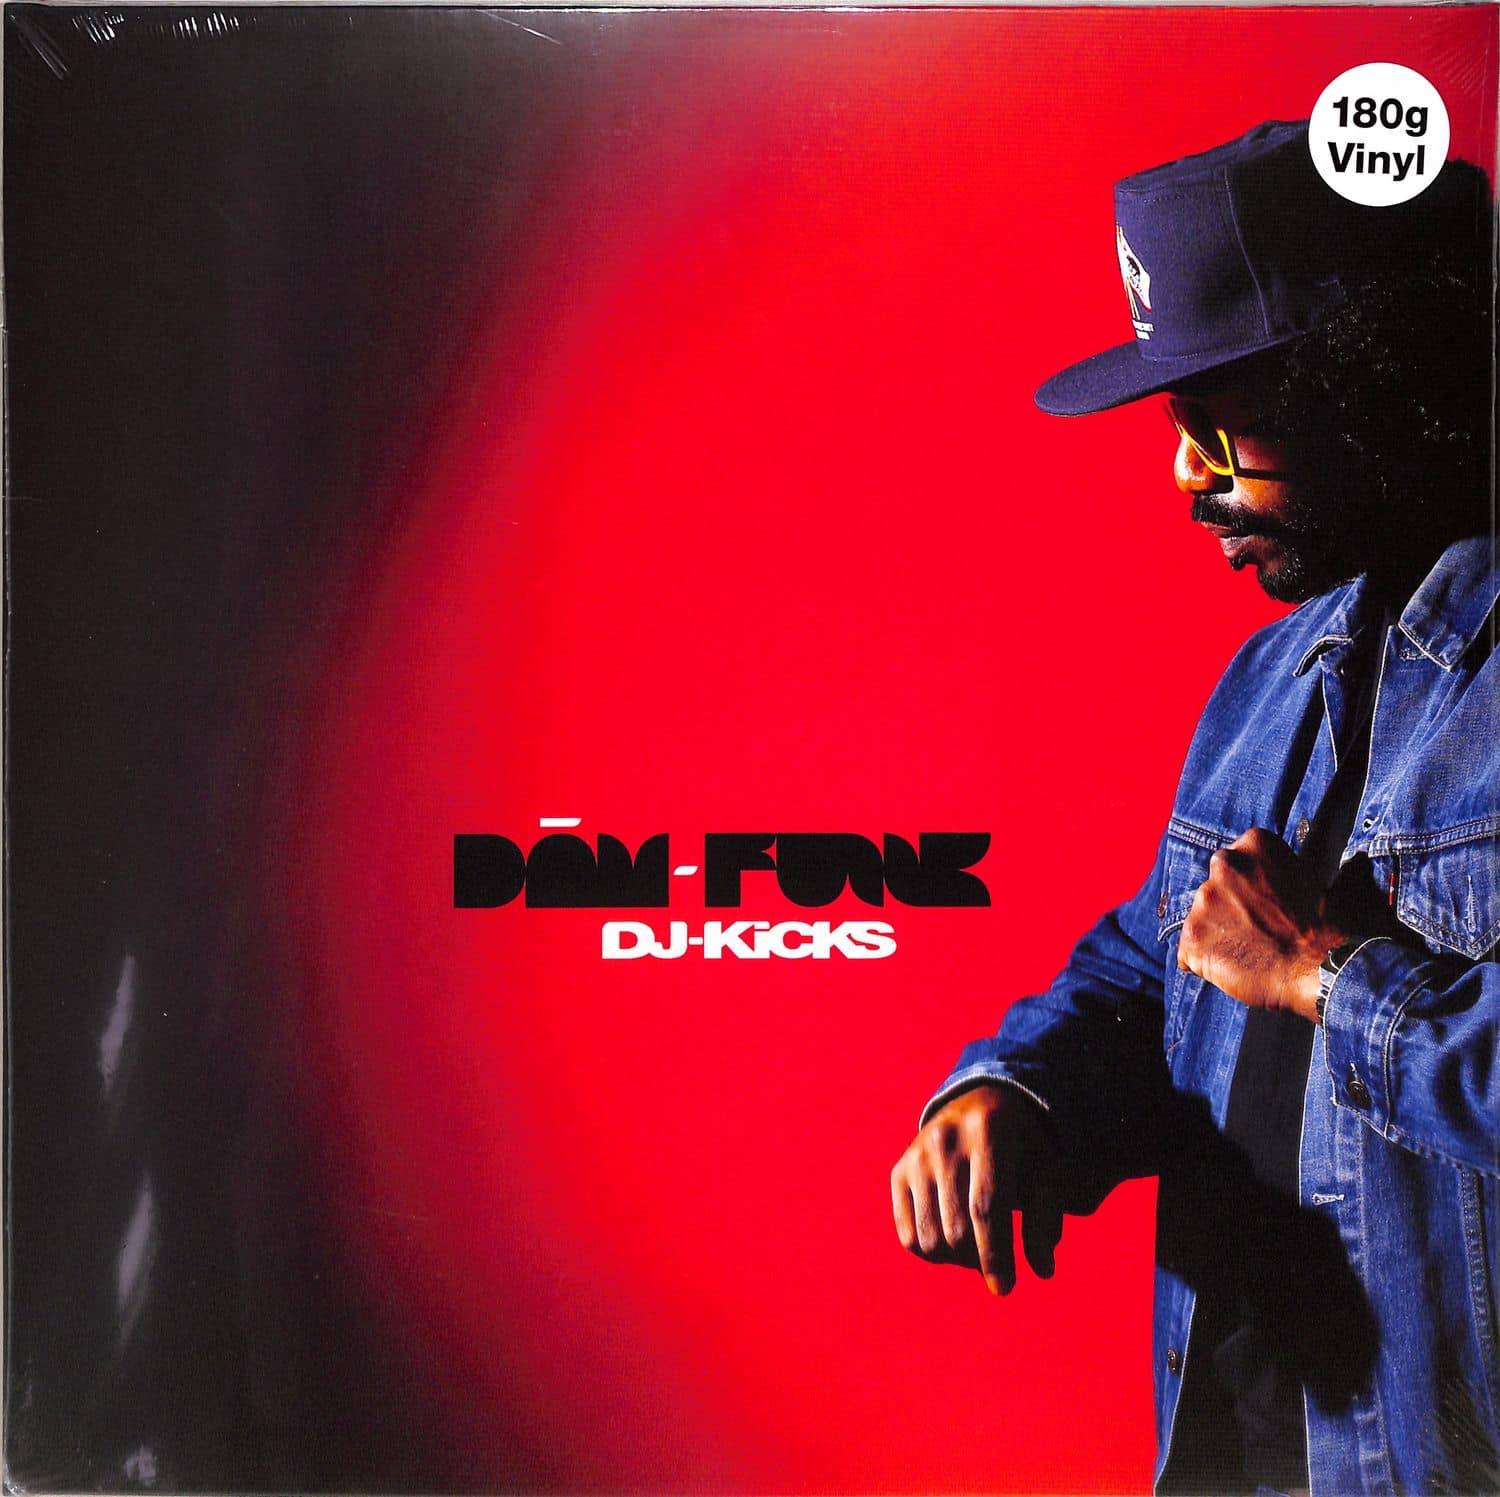 Dam-Funk - DJ-KICKS 